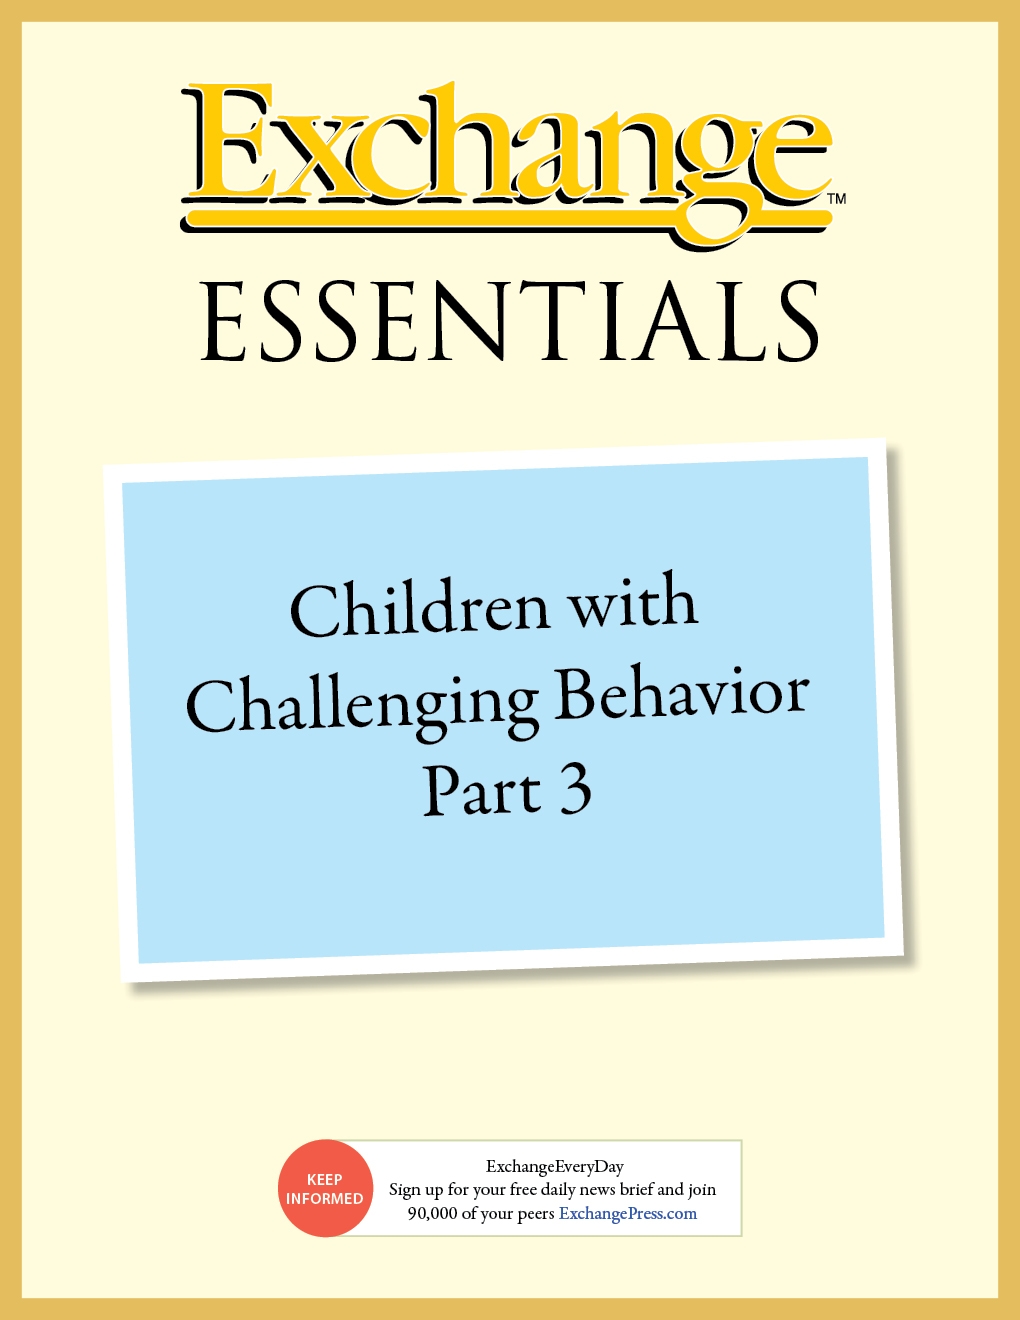 Children with Challenging Behavior Part 3